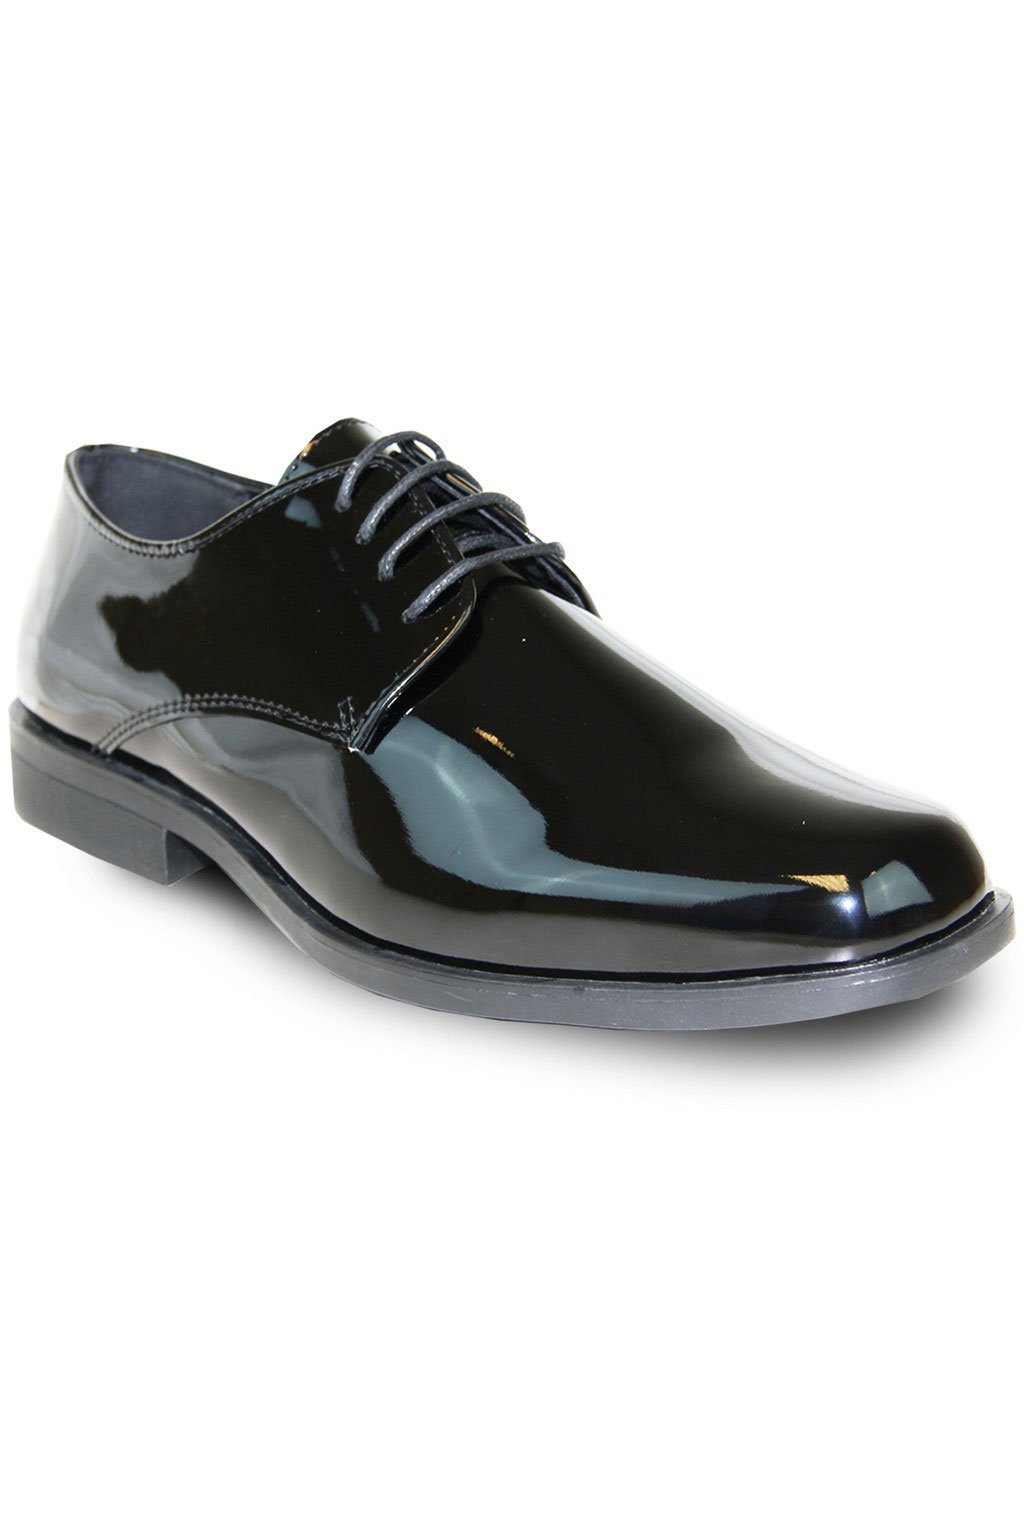 Plotselinge afdaling ondersteuning ik ben verdwaald Sarno" Black Vangelo Tuxedo Shoes – Buy4LessTuxedo.com